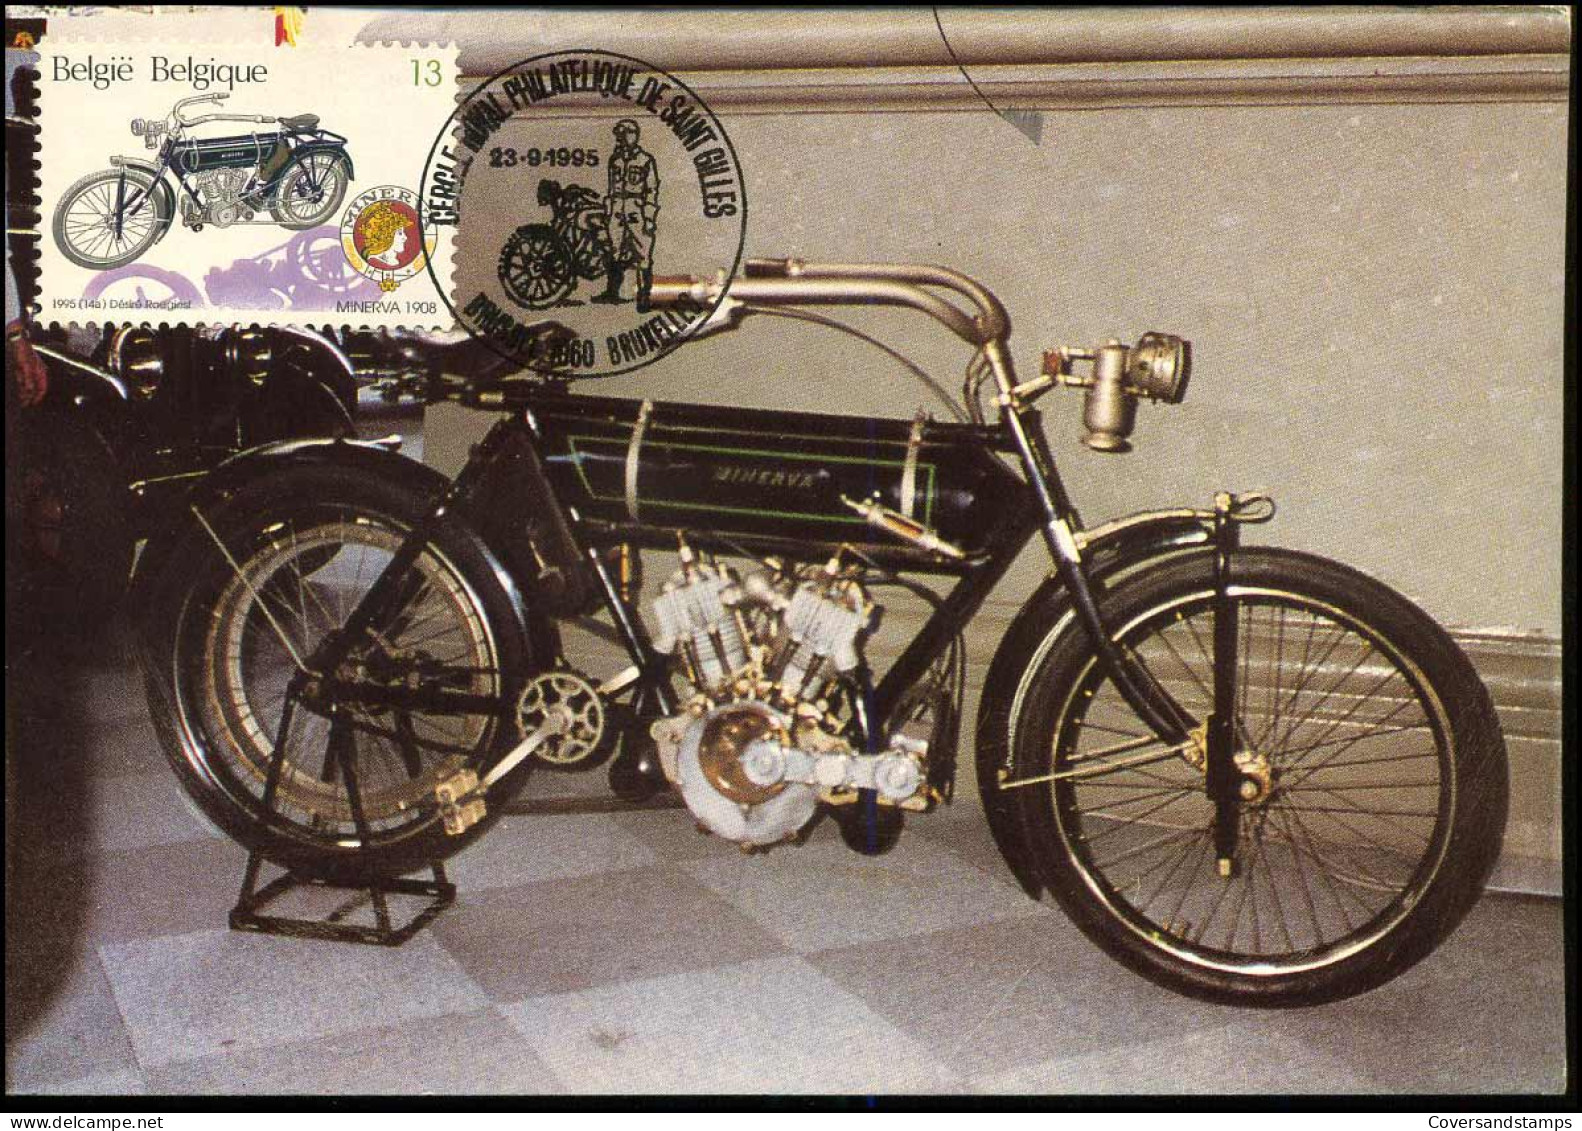 2615 - MK - Oude Belgische Moto's - Minerva 1908  - 1991-2000